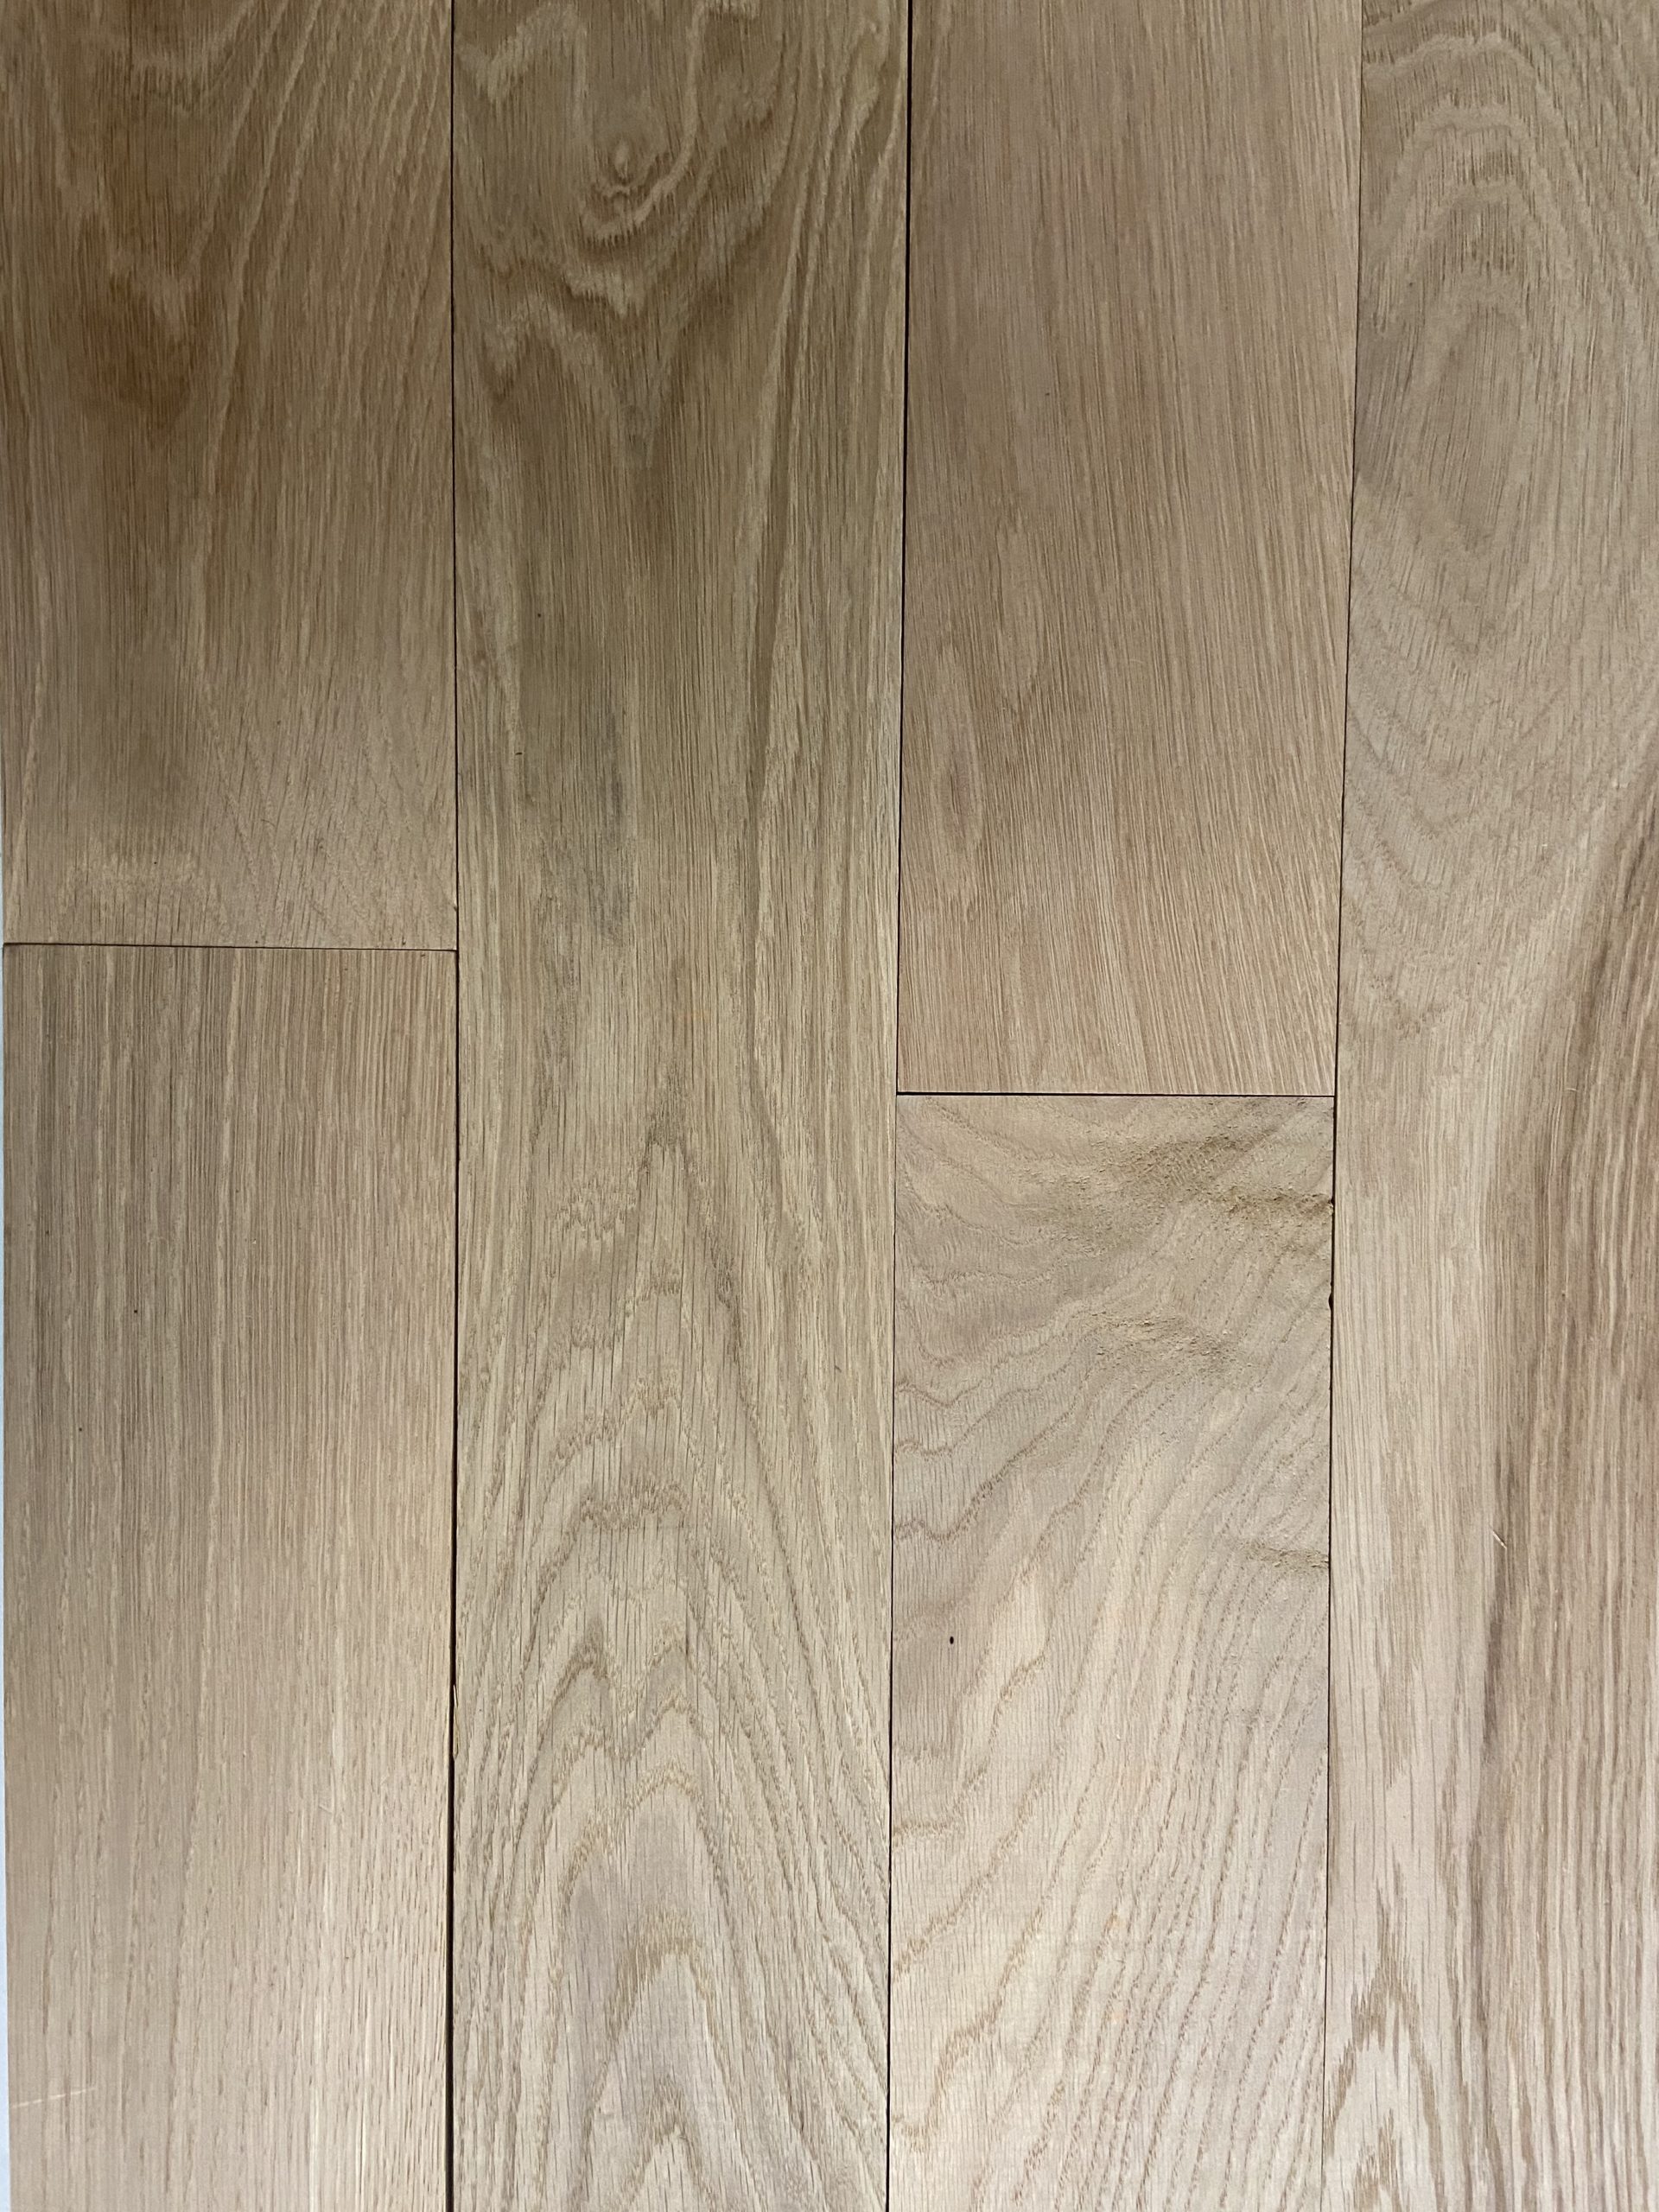 Unfinished White Oak Hardwood Flooring | Solid 3/4